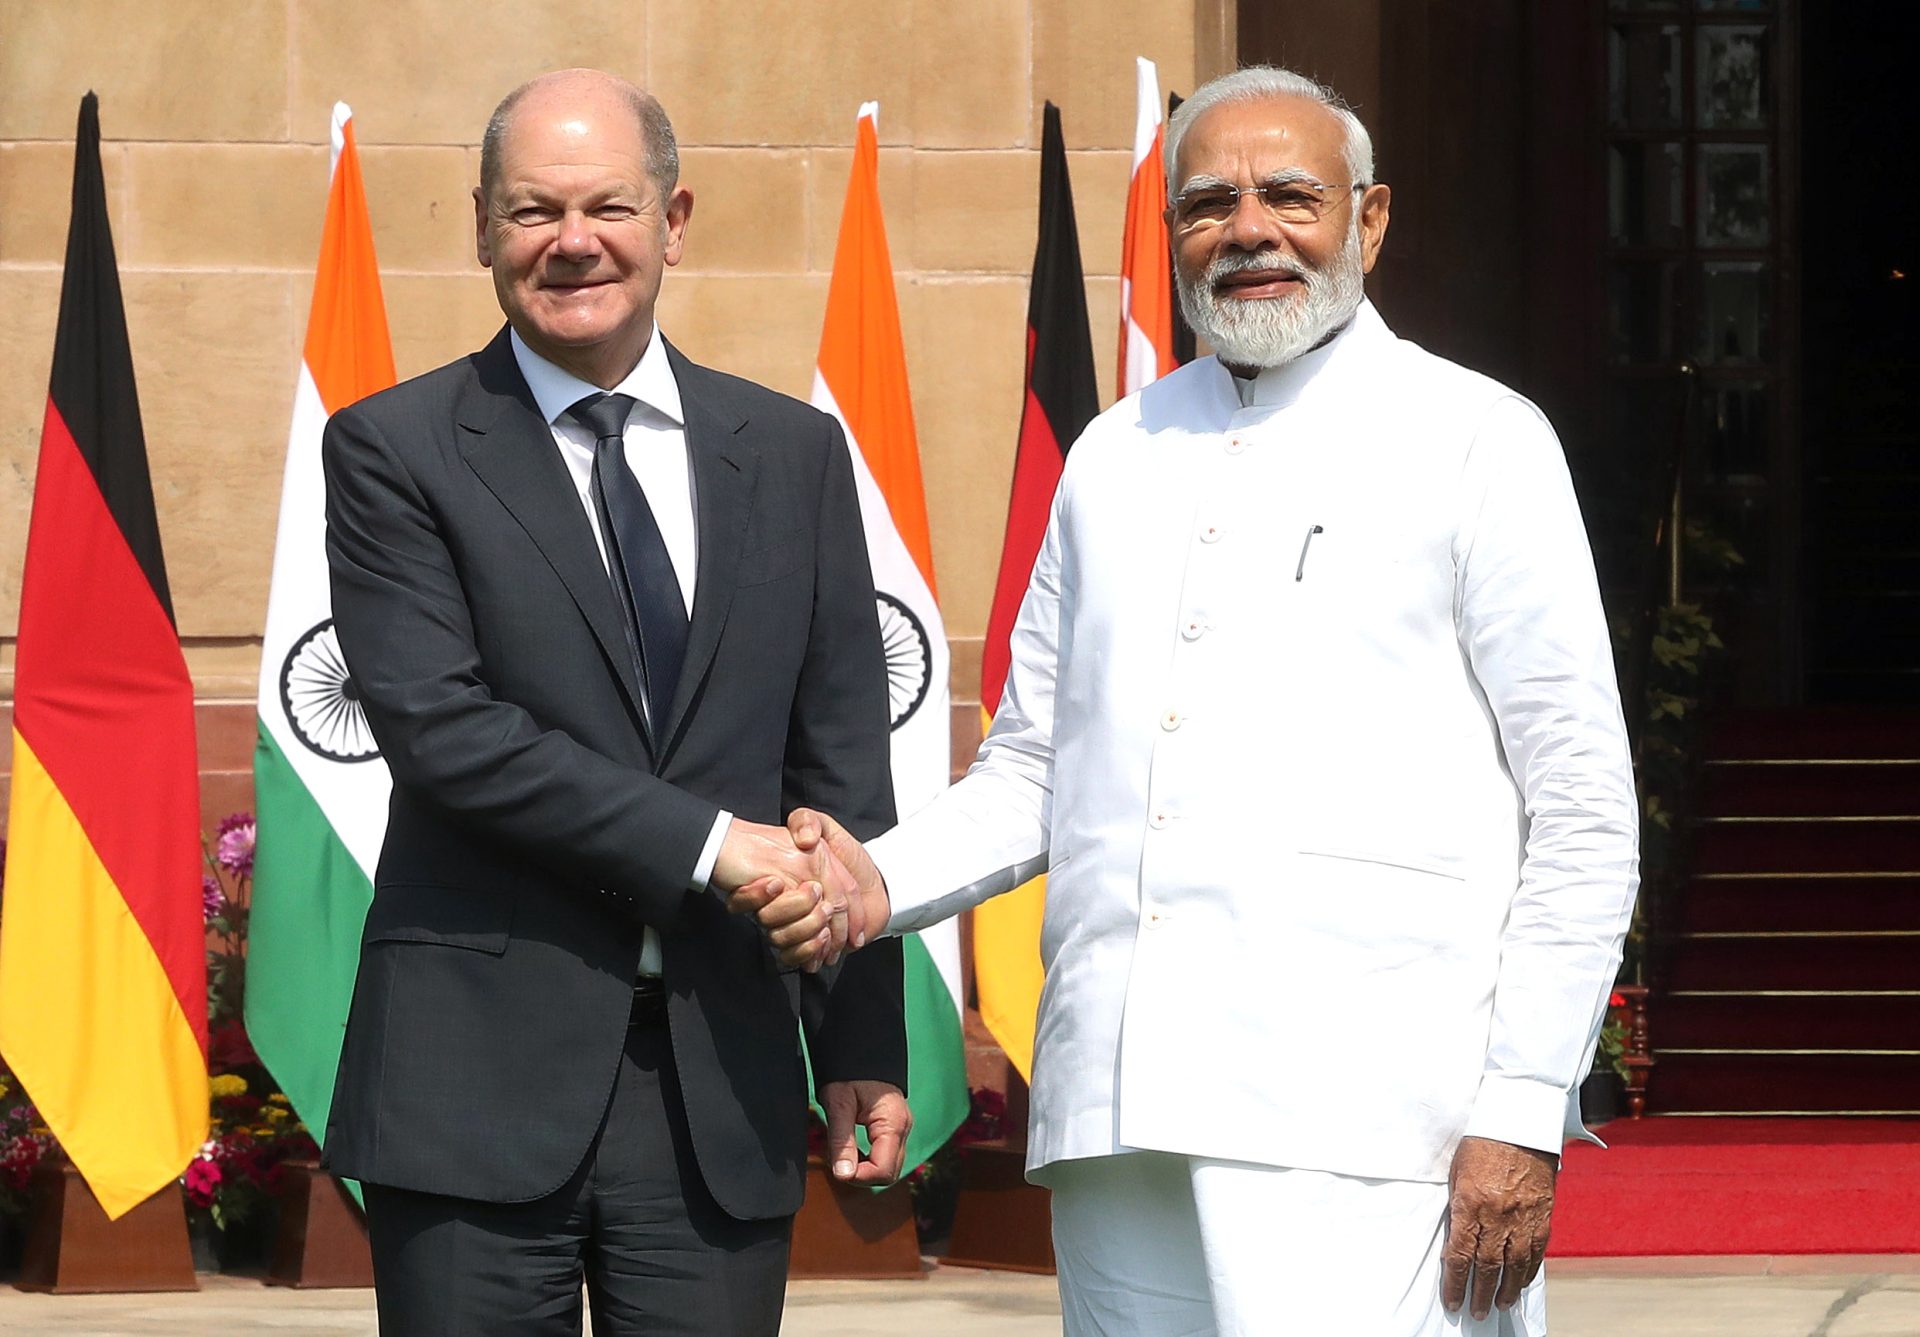 El canciller alemán Scholz se centra en el comercio bilateral y el cambio climático en su visita a India